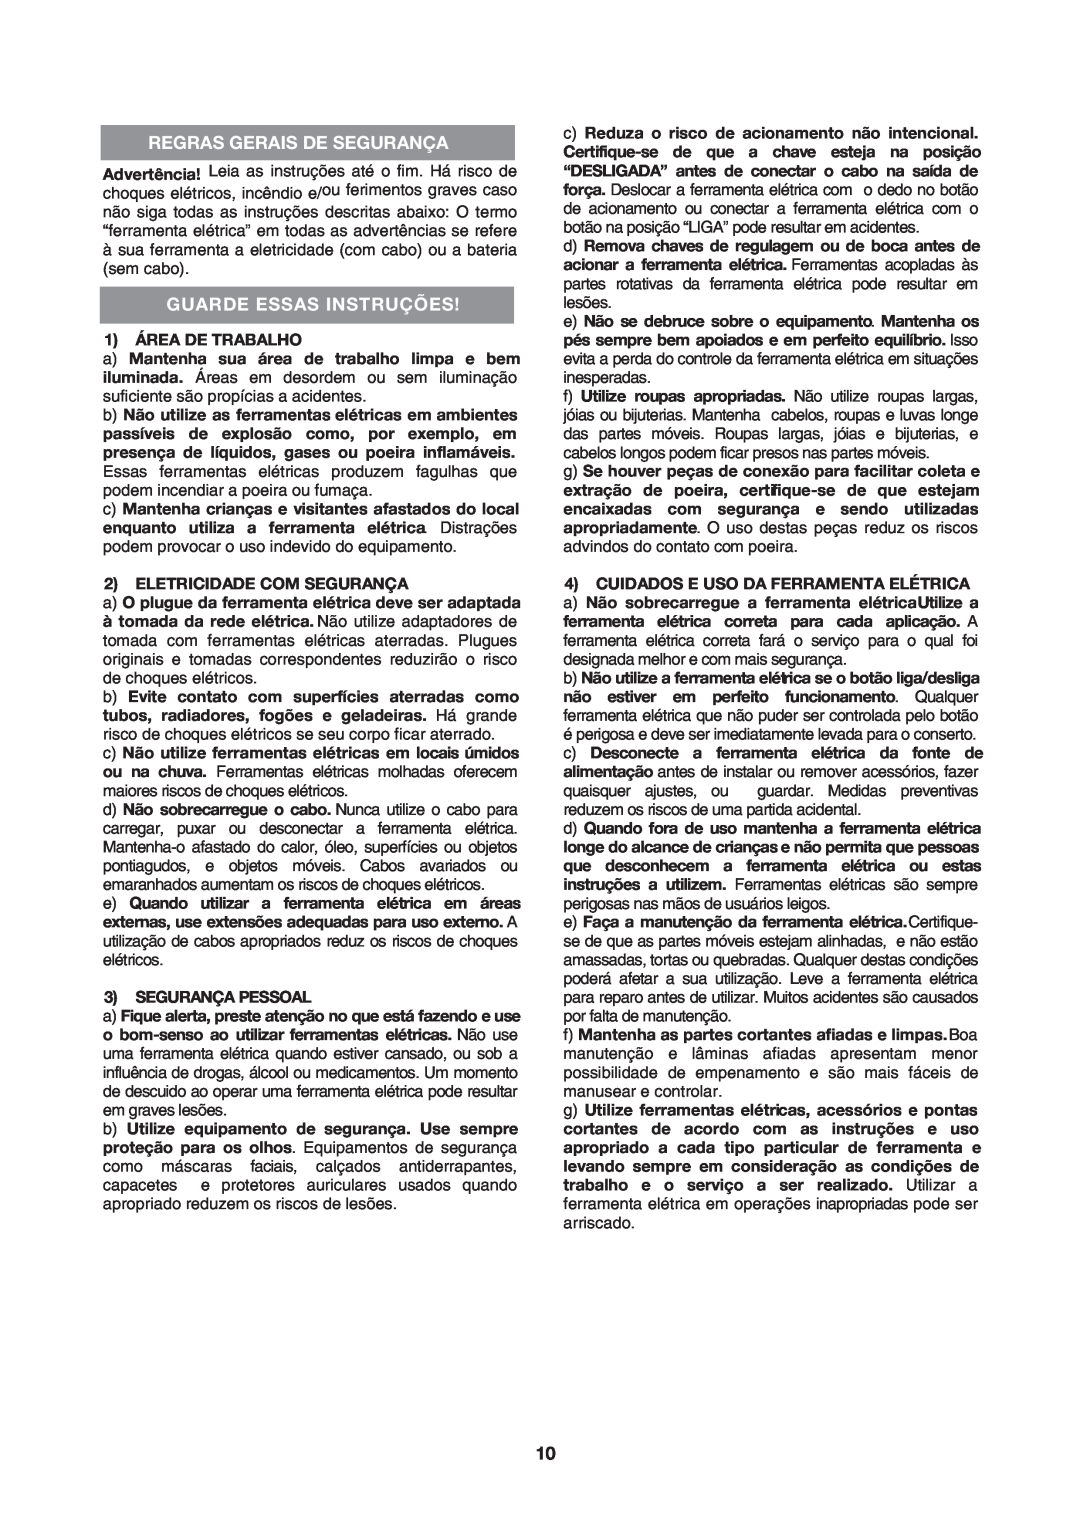 Black & Decker BV2200 instruction manual Regras Gerais De Segurança, Guarde Essas Instruções 